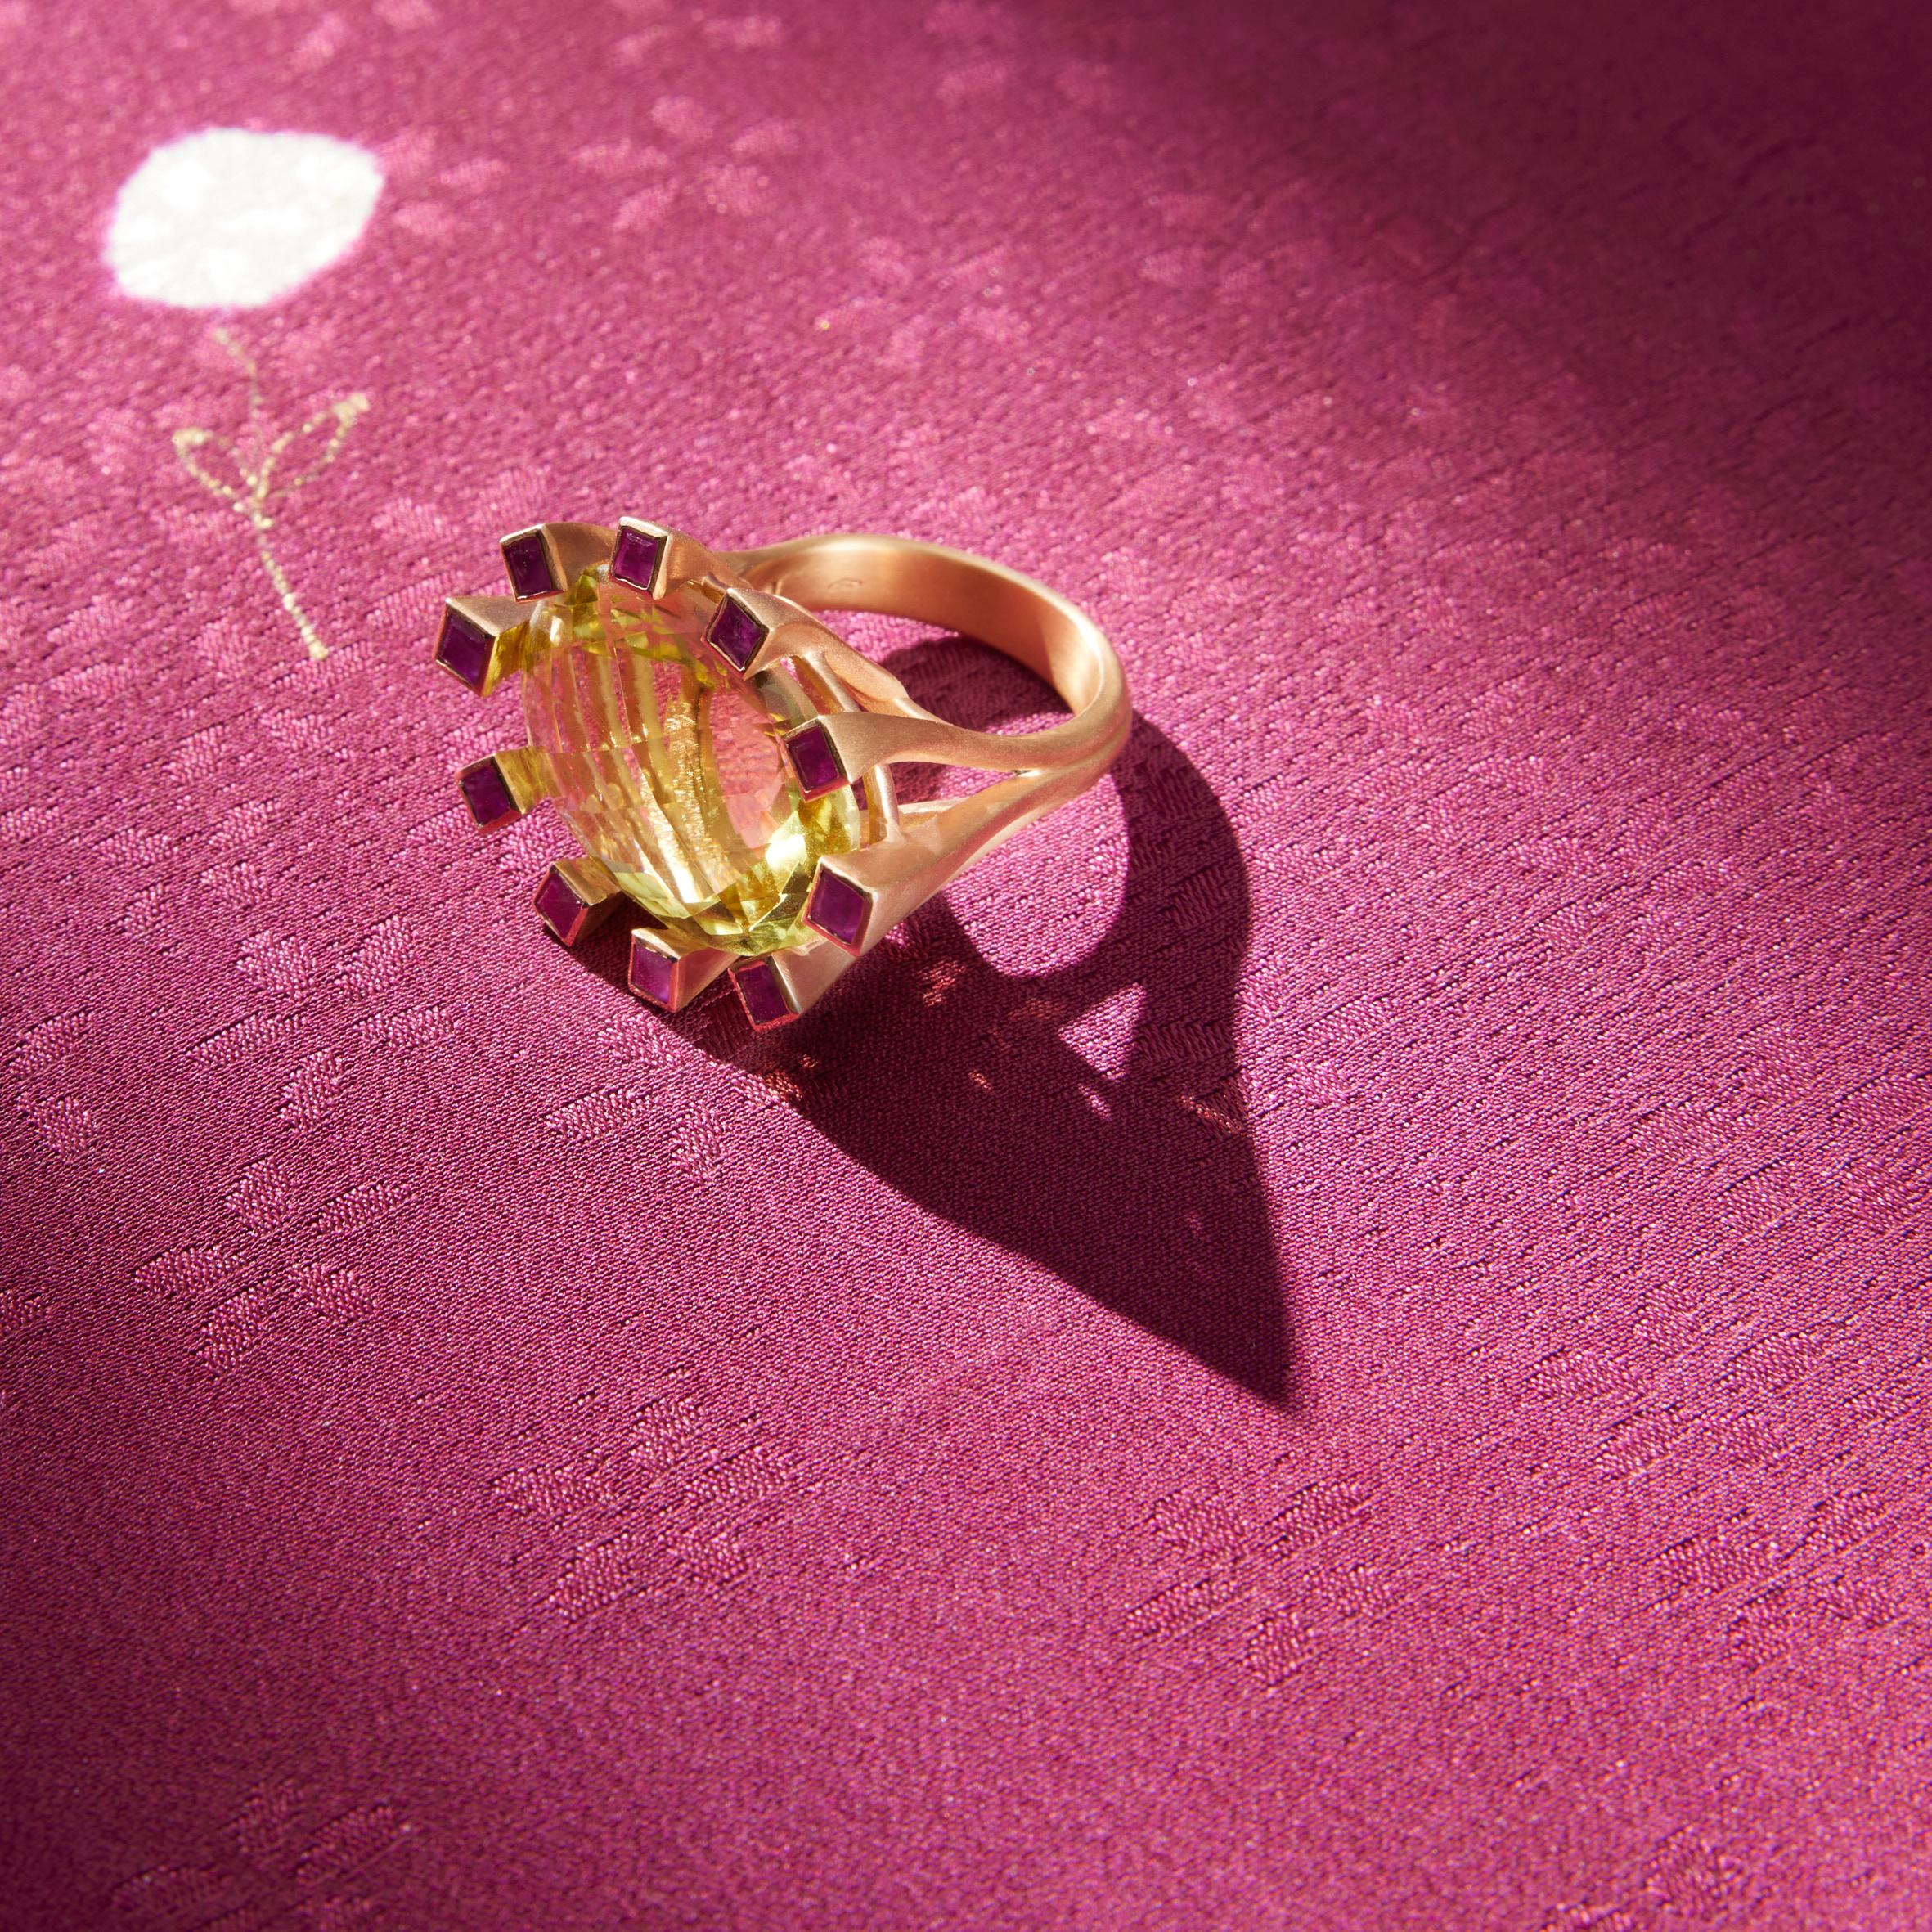 Rose Gold 21g prächtigen Citrin 12cts umgeben von Rubin Prinzess-Schliff.
Der gesamte Schmuck von Giulia Colussi ist neu und wurde noch nie zuvor getragen oder besessen. Jeder Artikel kommt schön verpackt in unseren Schachteln in einem eleganten